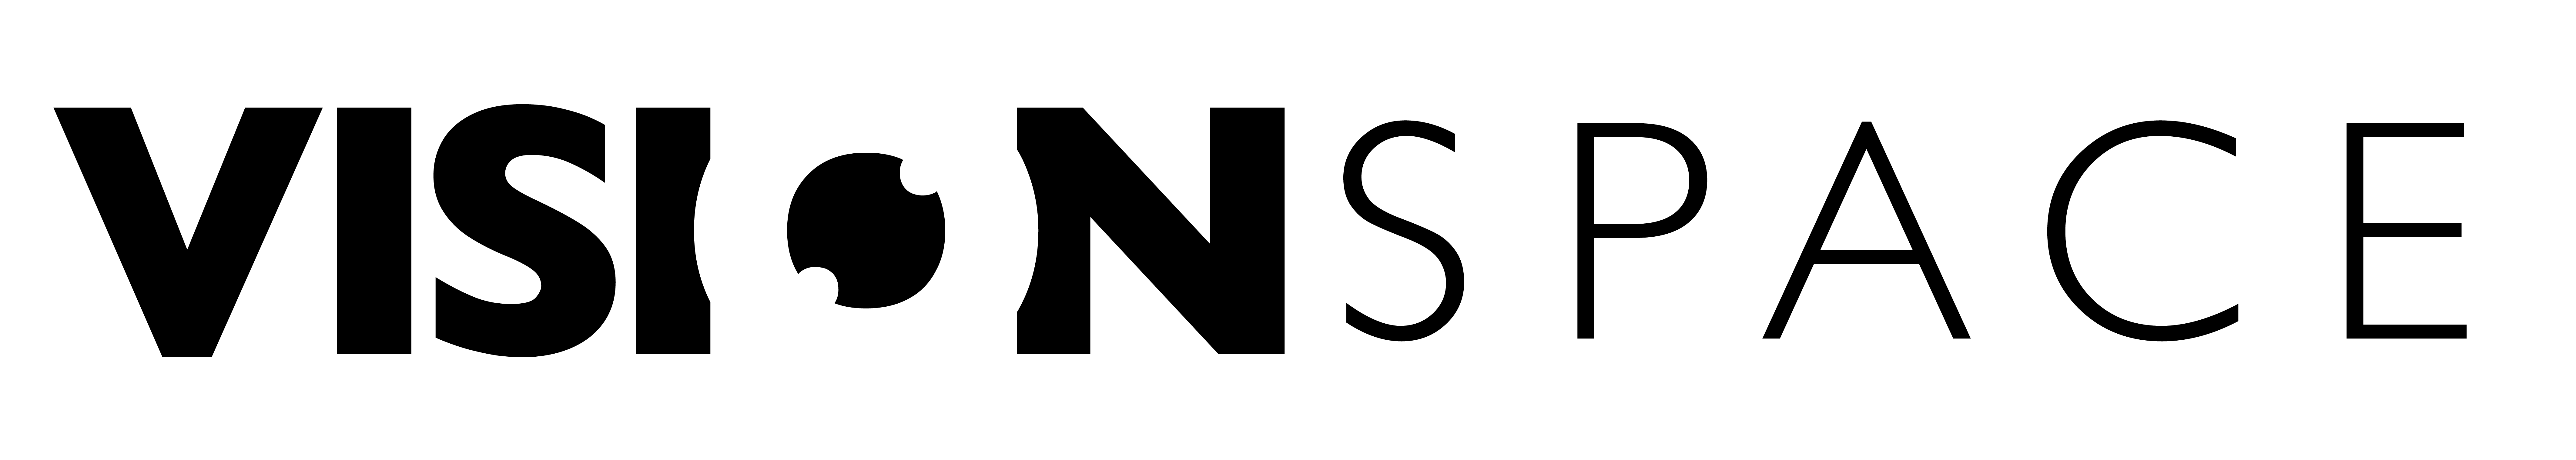 Visionspace navbar logo